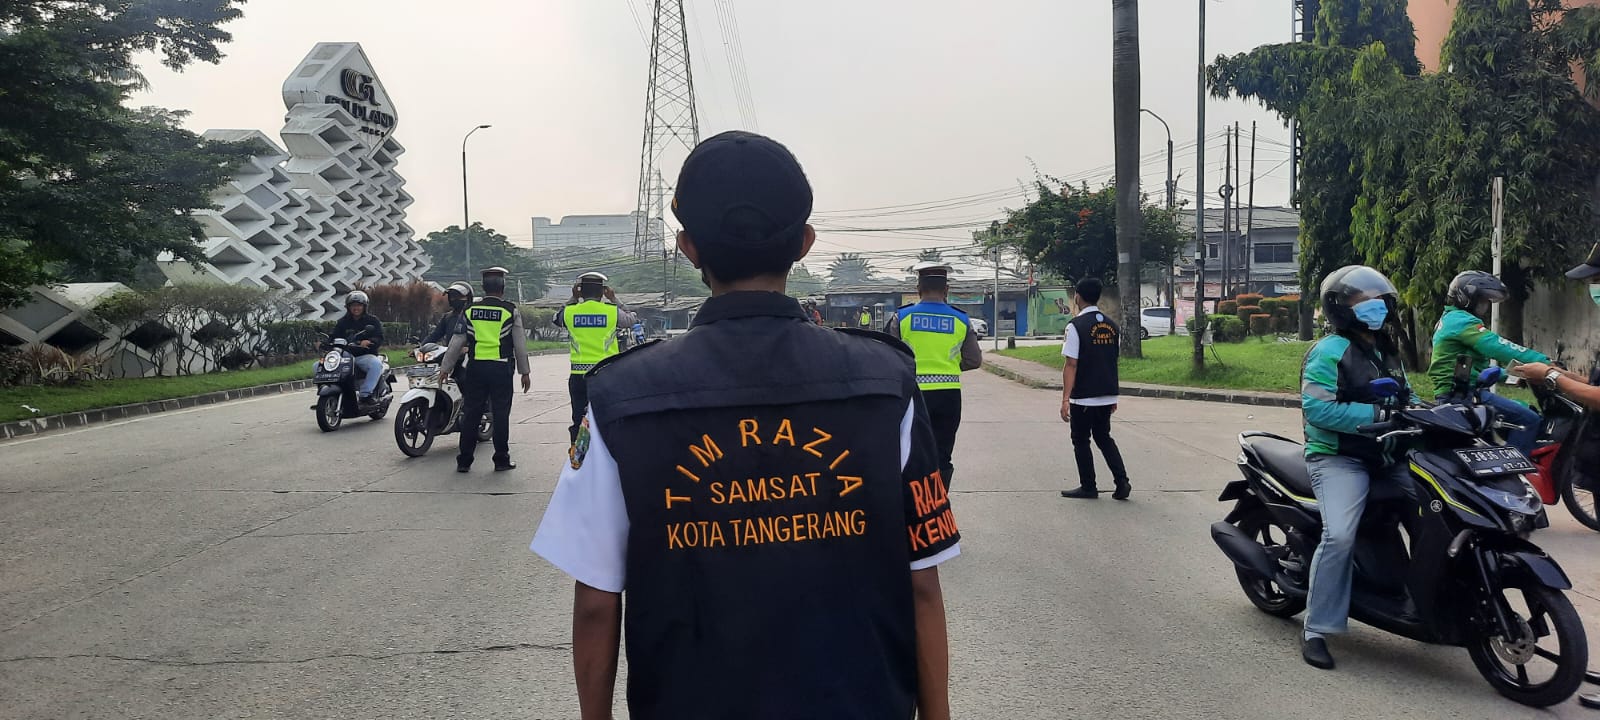 Pajak Kendaraan Bermotor Telat Bayar? Awas Kena Razia Samsat Cikokol di Kota Tangerang